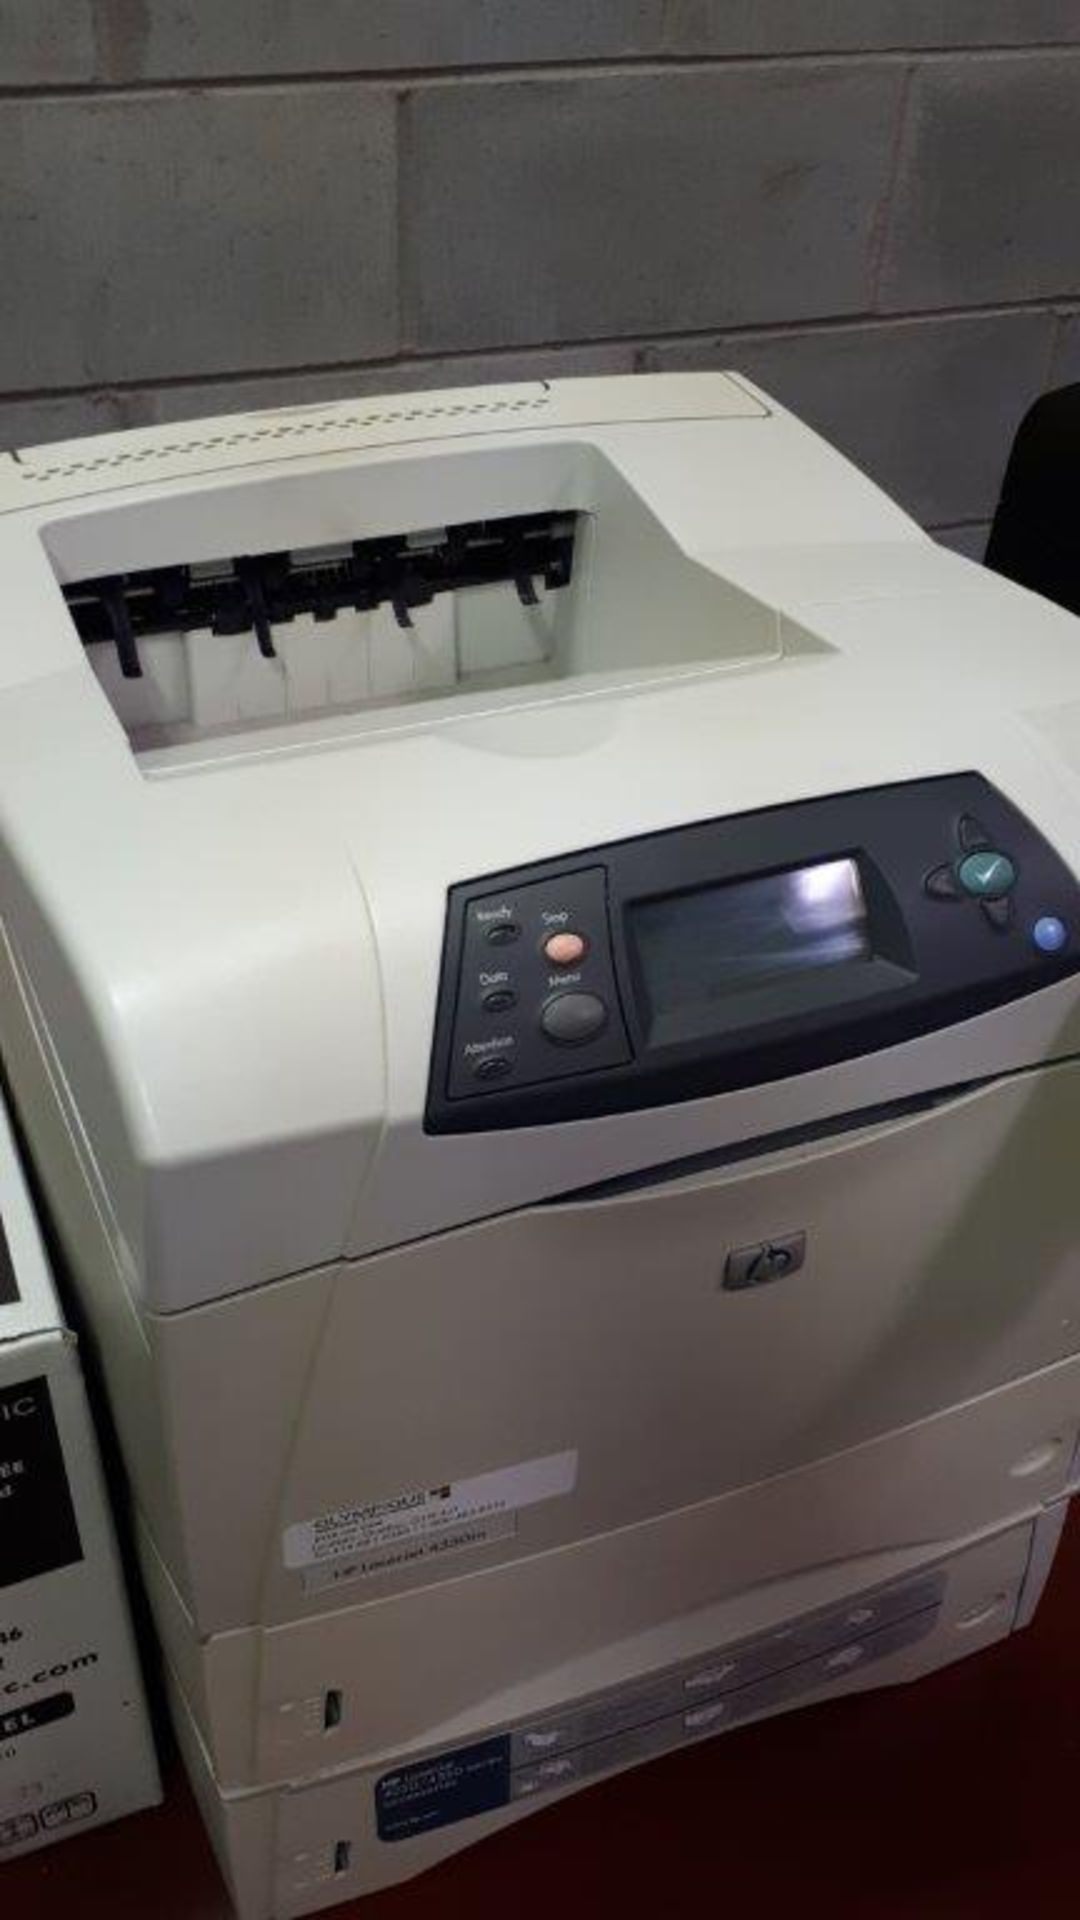 Imprimante Laser Jet HP # 4350TN - Image 2 of 2